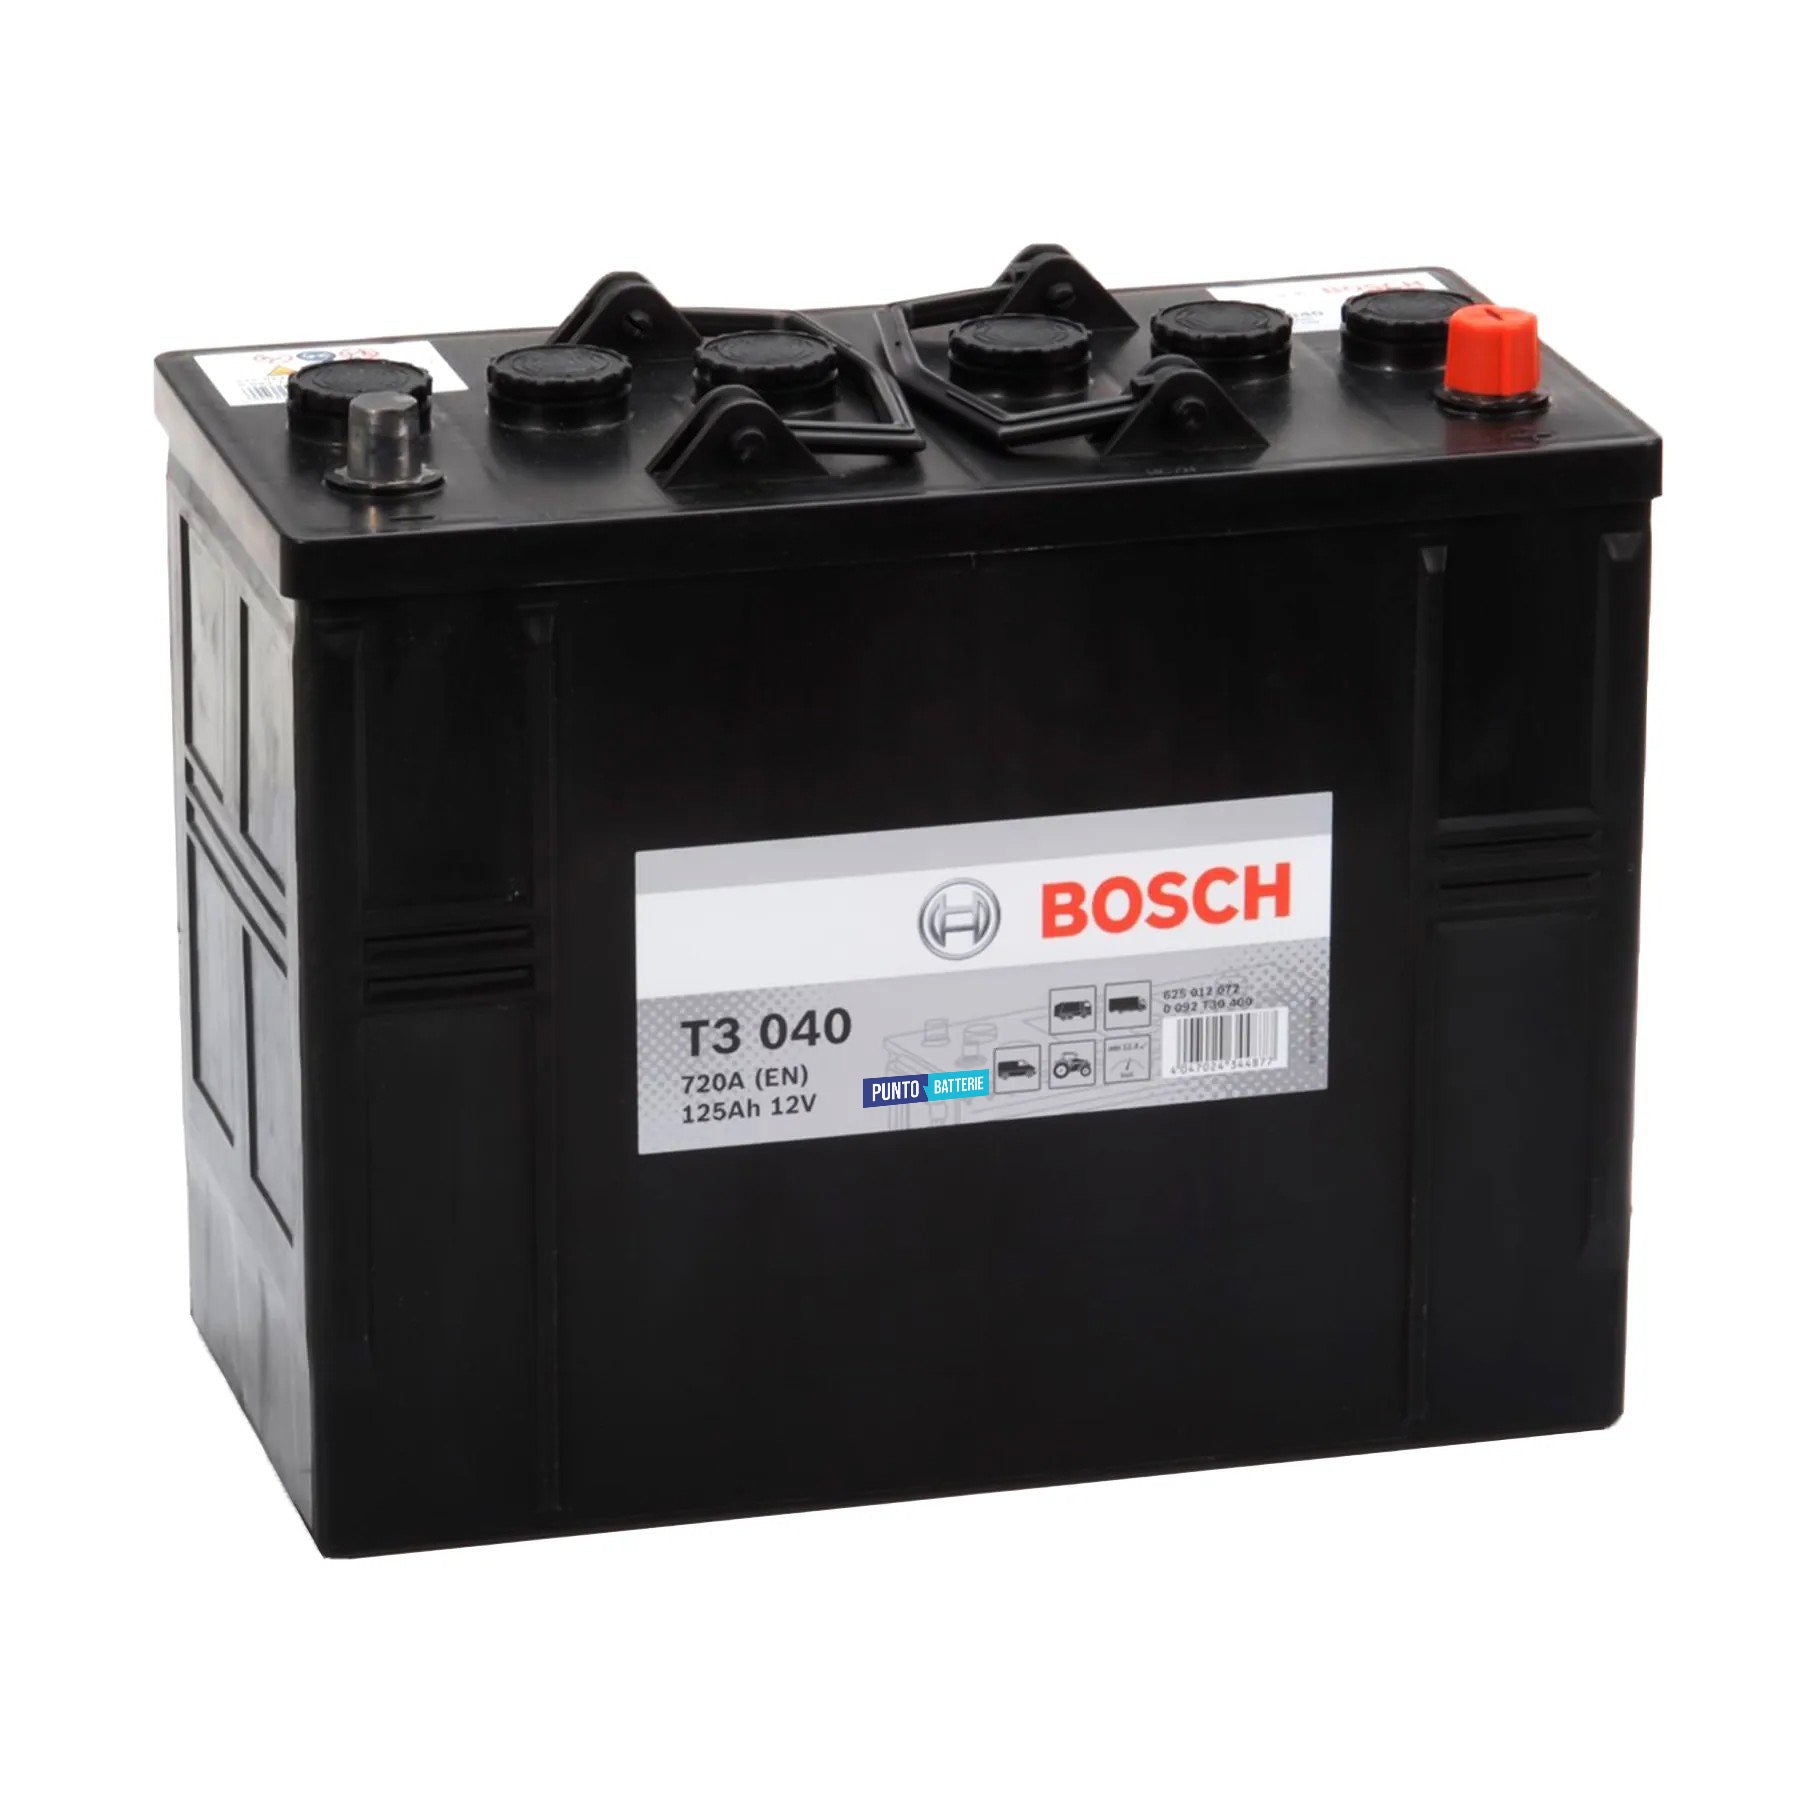 Batteria originale Bosch T3 T3040, dimensioni 344 x 172 x 285, polo positivo a destra, 12 volt, 125 amperora, 720 ampere. Batteria per camion e veicoli pesanti.